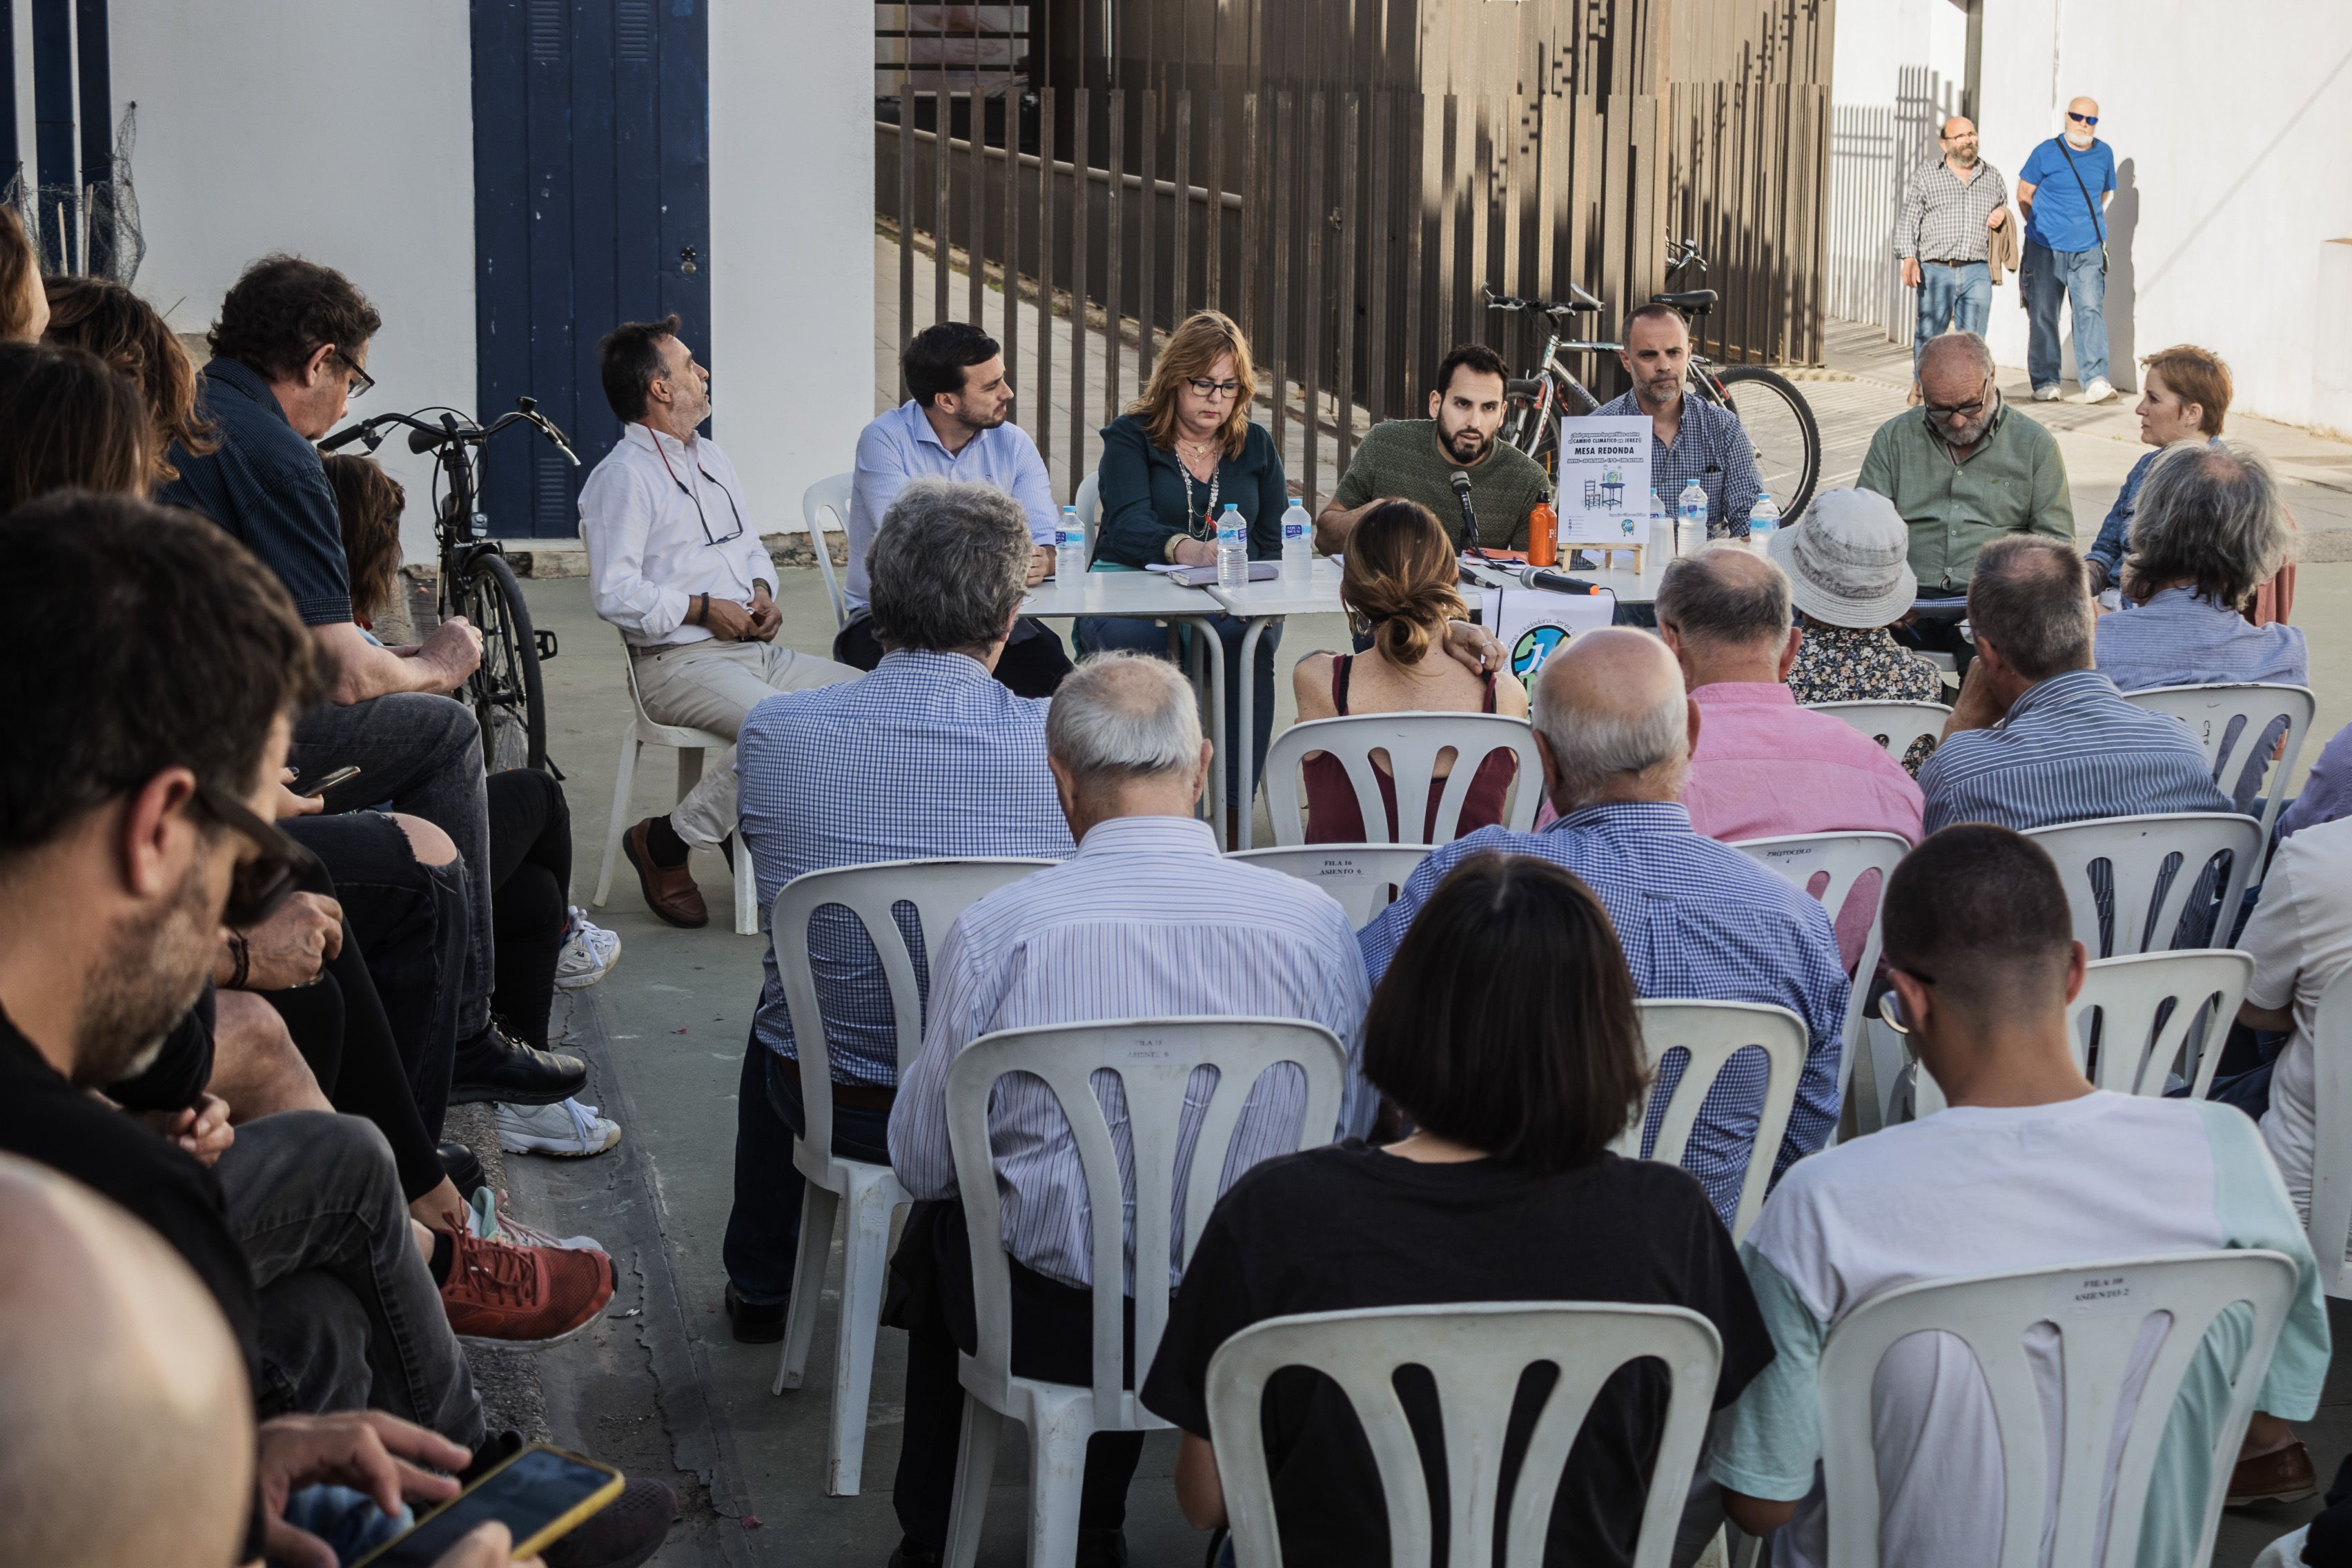 Un momento de la mesa redonda con partidos políticos, este pasado jueves en el Cine astoria, organizada por Jerez por el Clima.